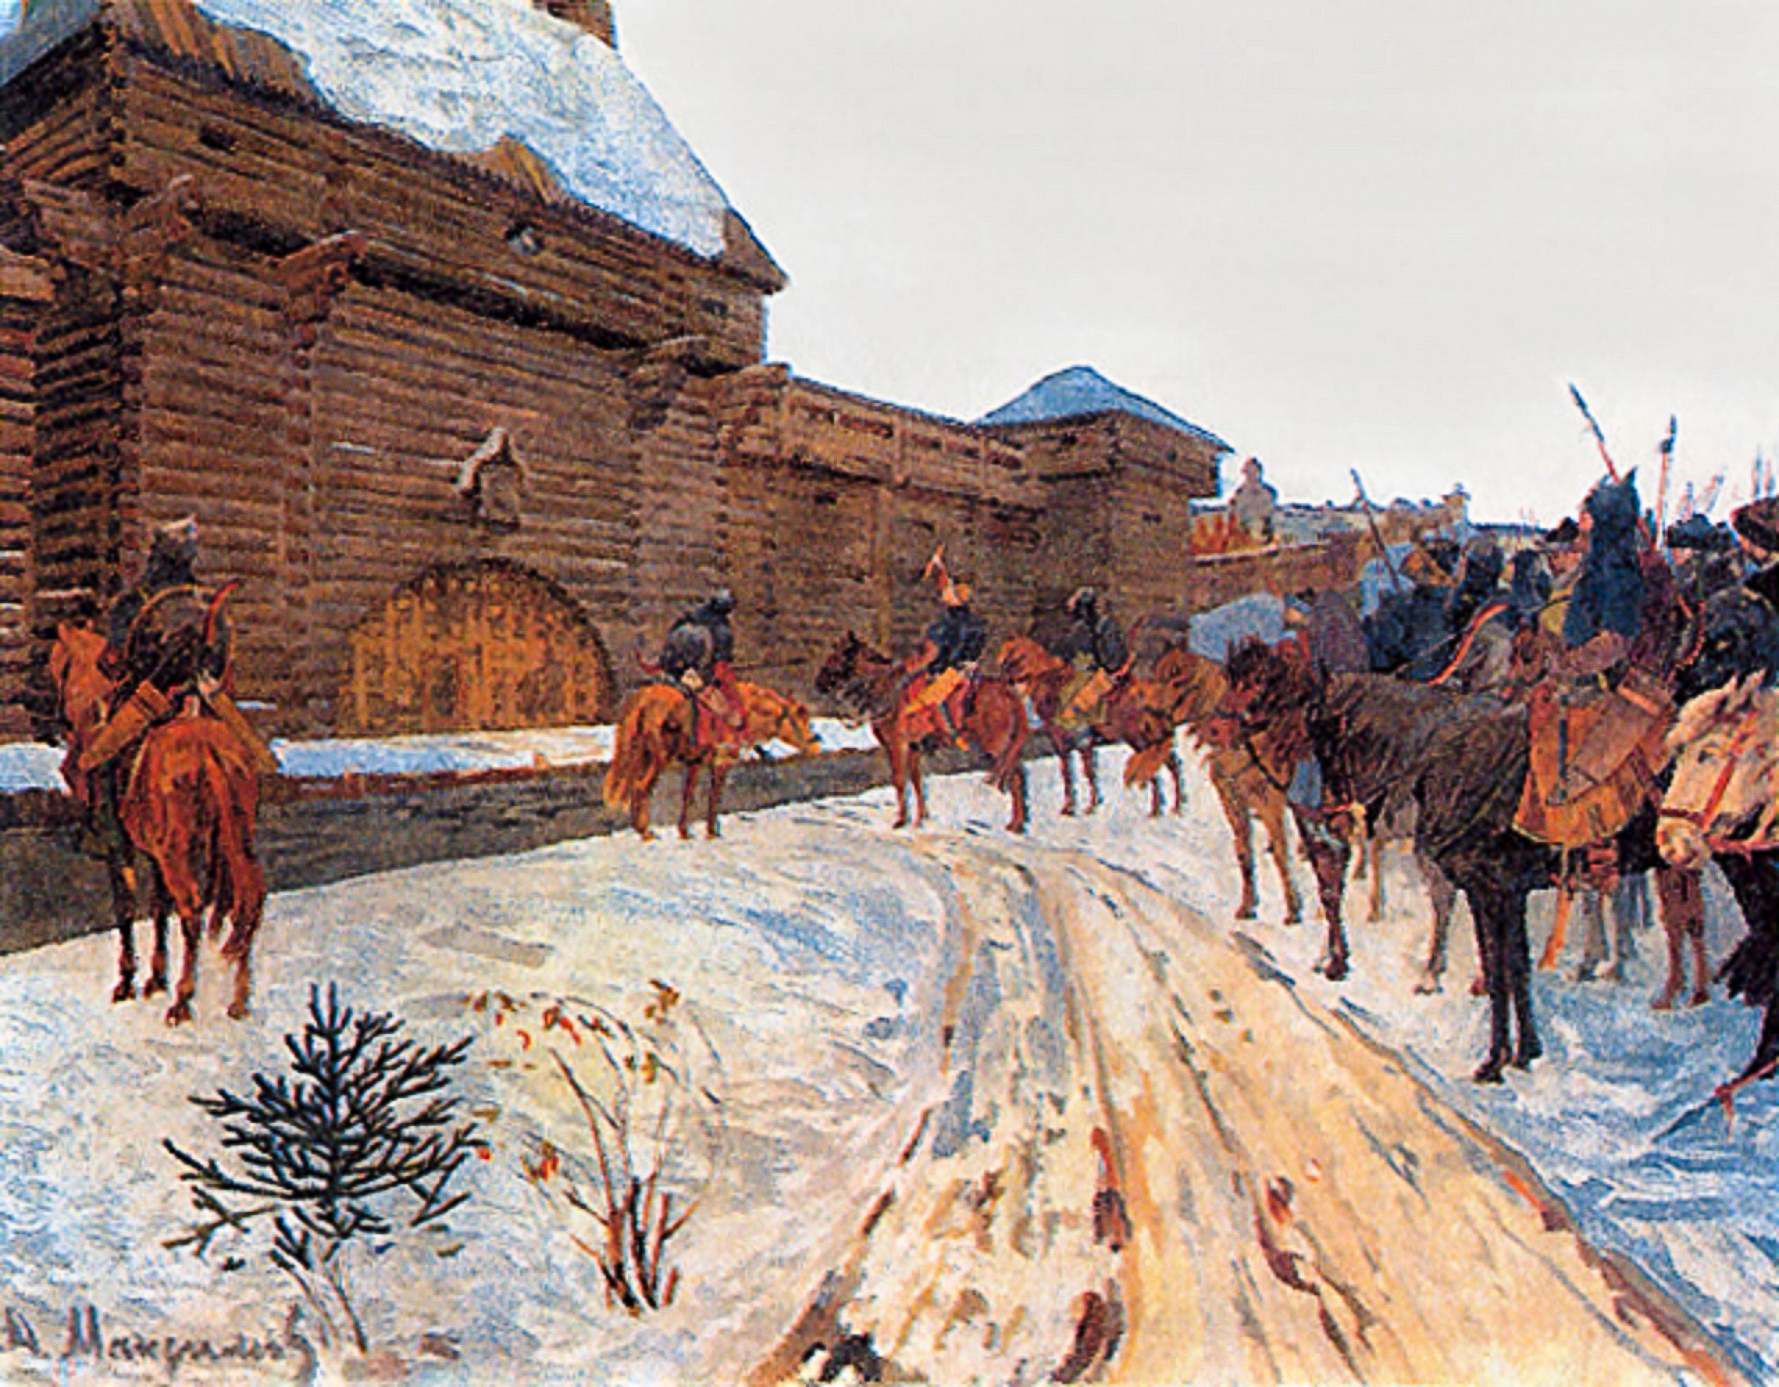 Mongóis nas Muralhas de Vladimir.